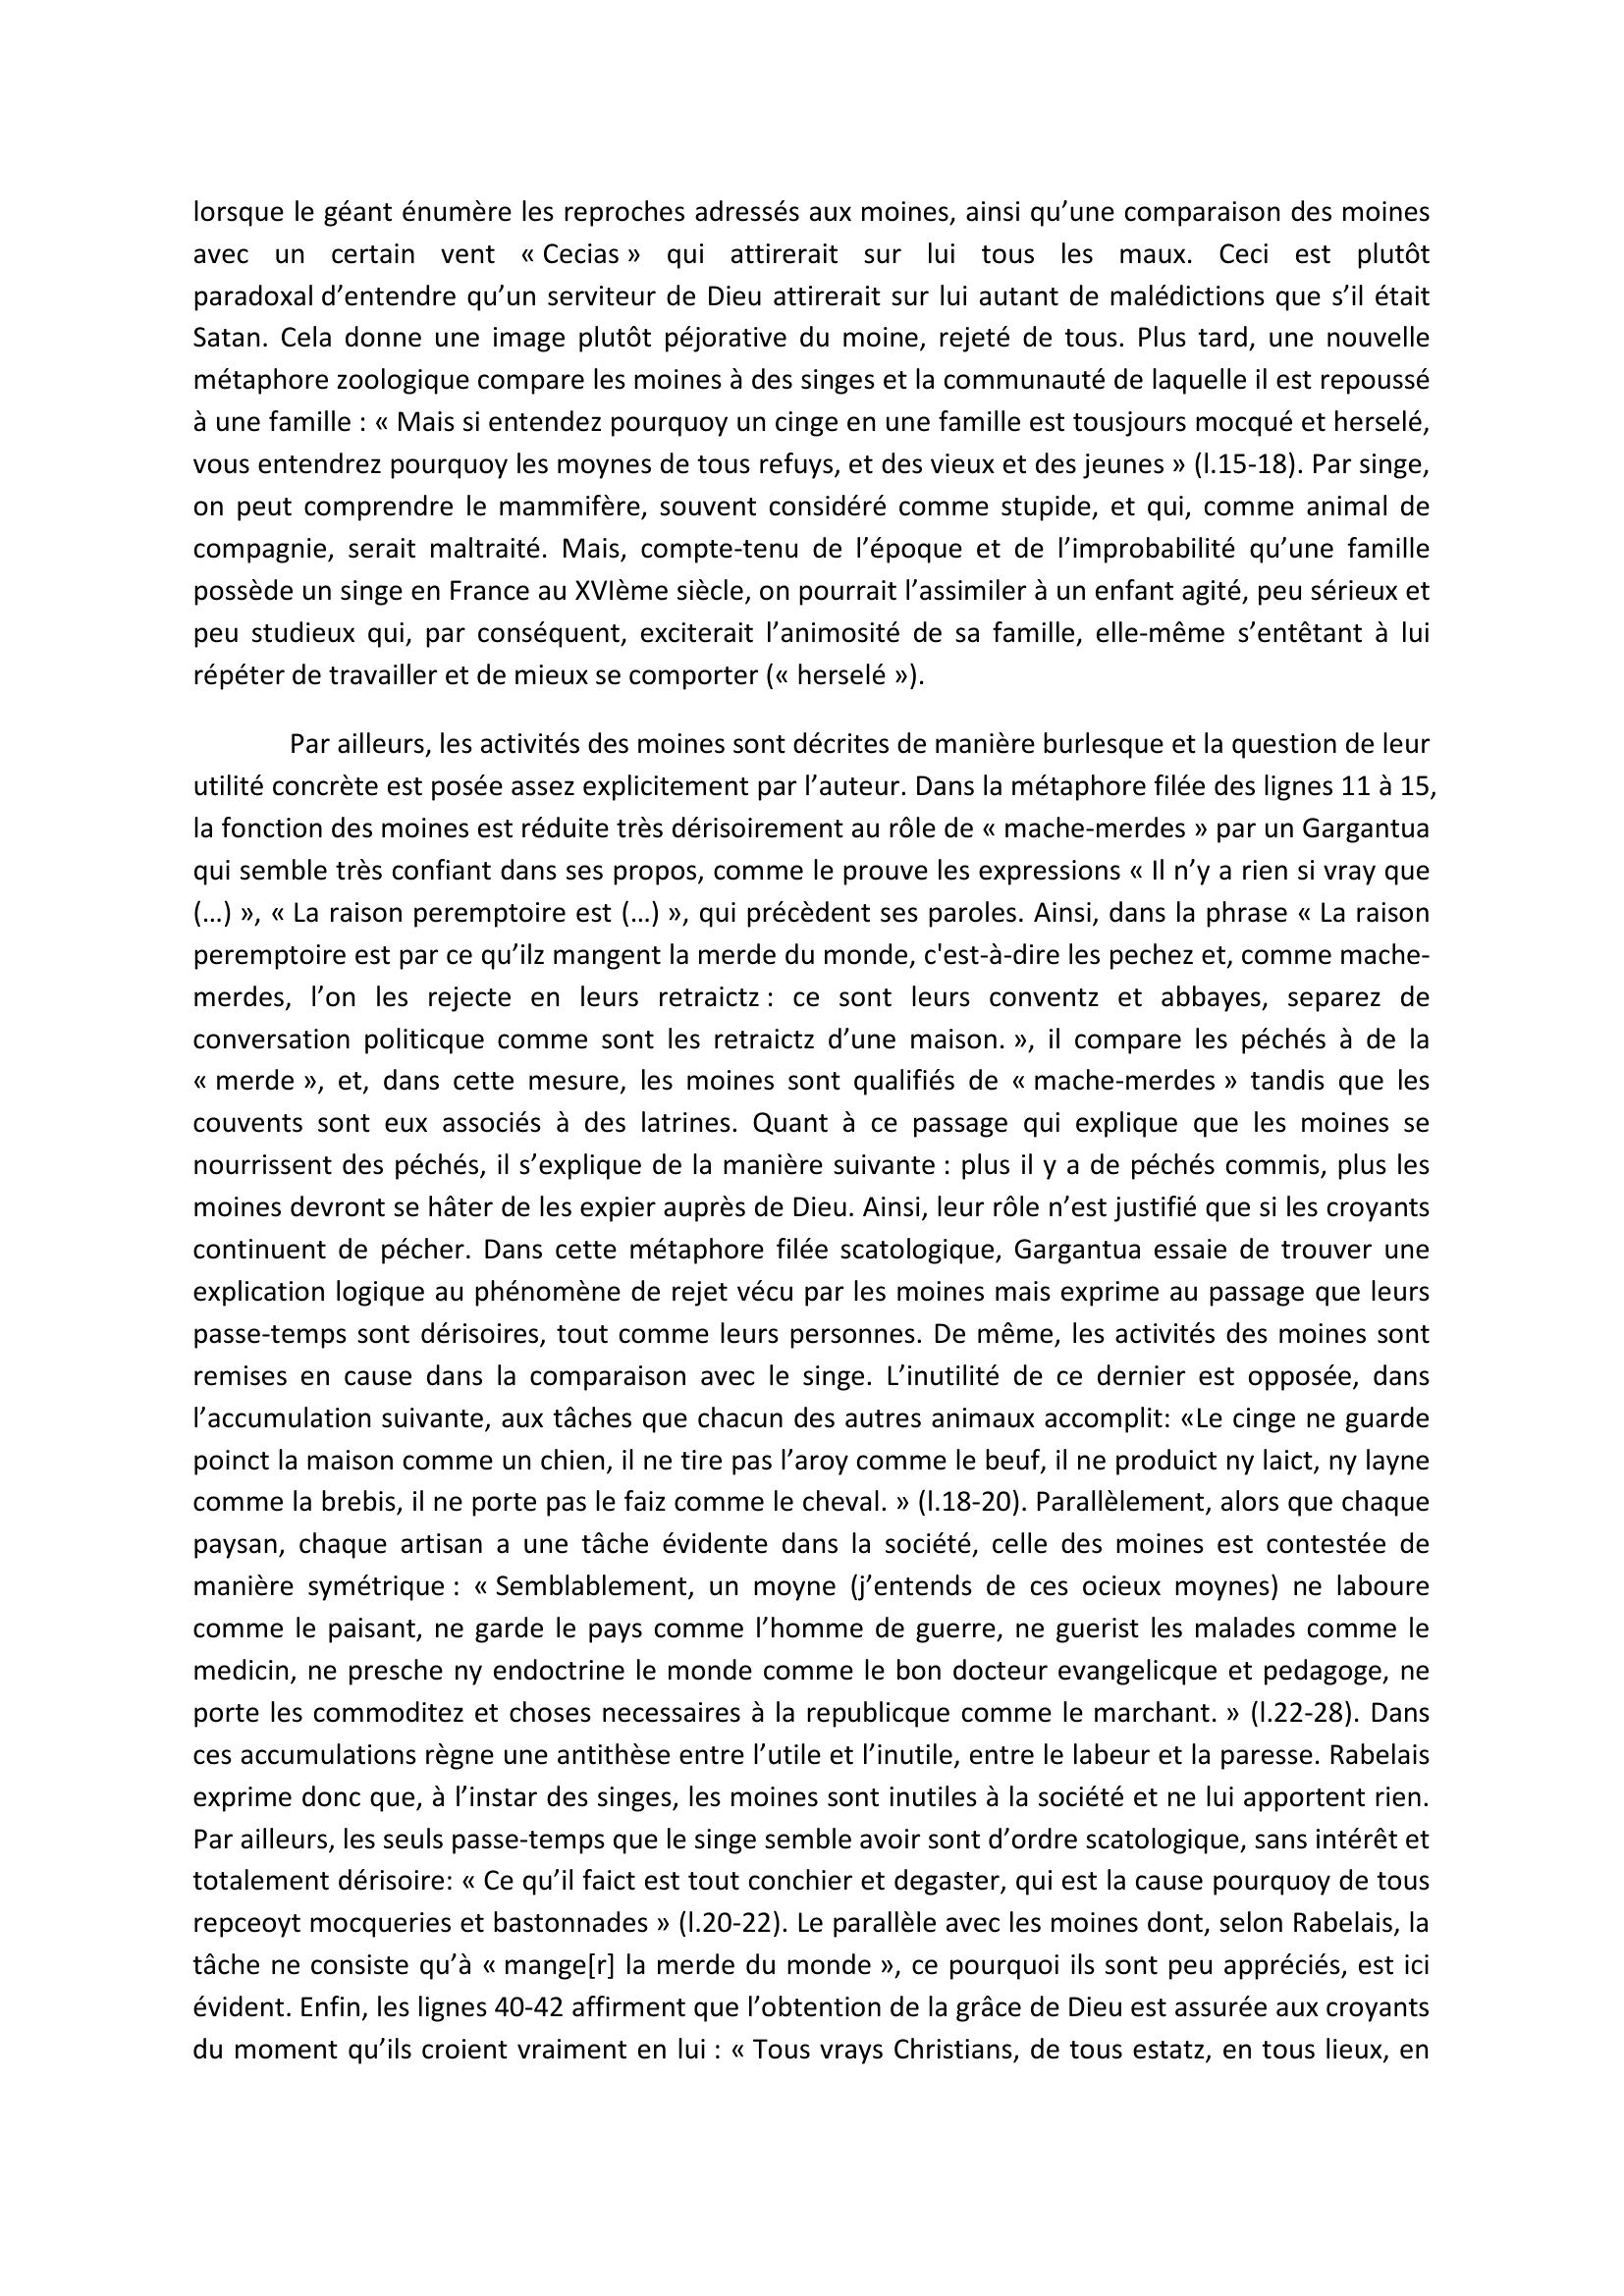 Prévisualisation du document COMMENTAIRE COMPOSE  Chap. 40 de Gargantua : Pourquoy les Moynes sont refuyz du monde et pourquoy les ungs ont le nez plus grand que les aultres.